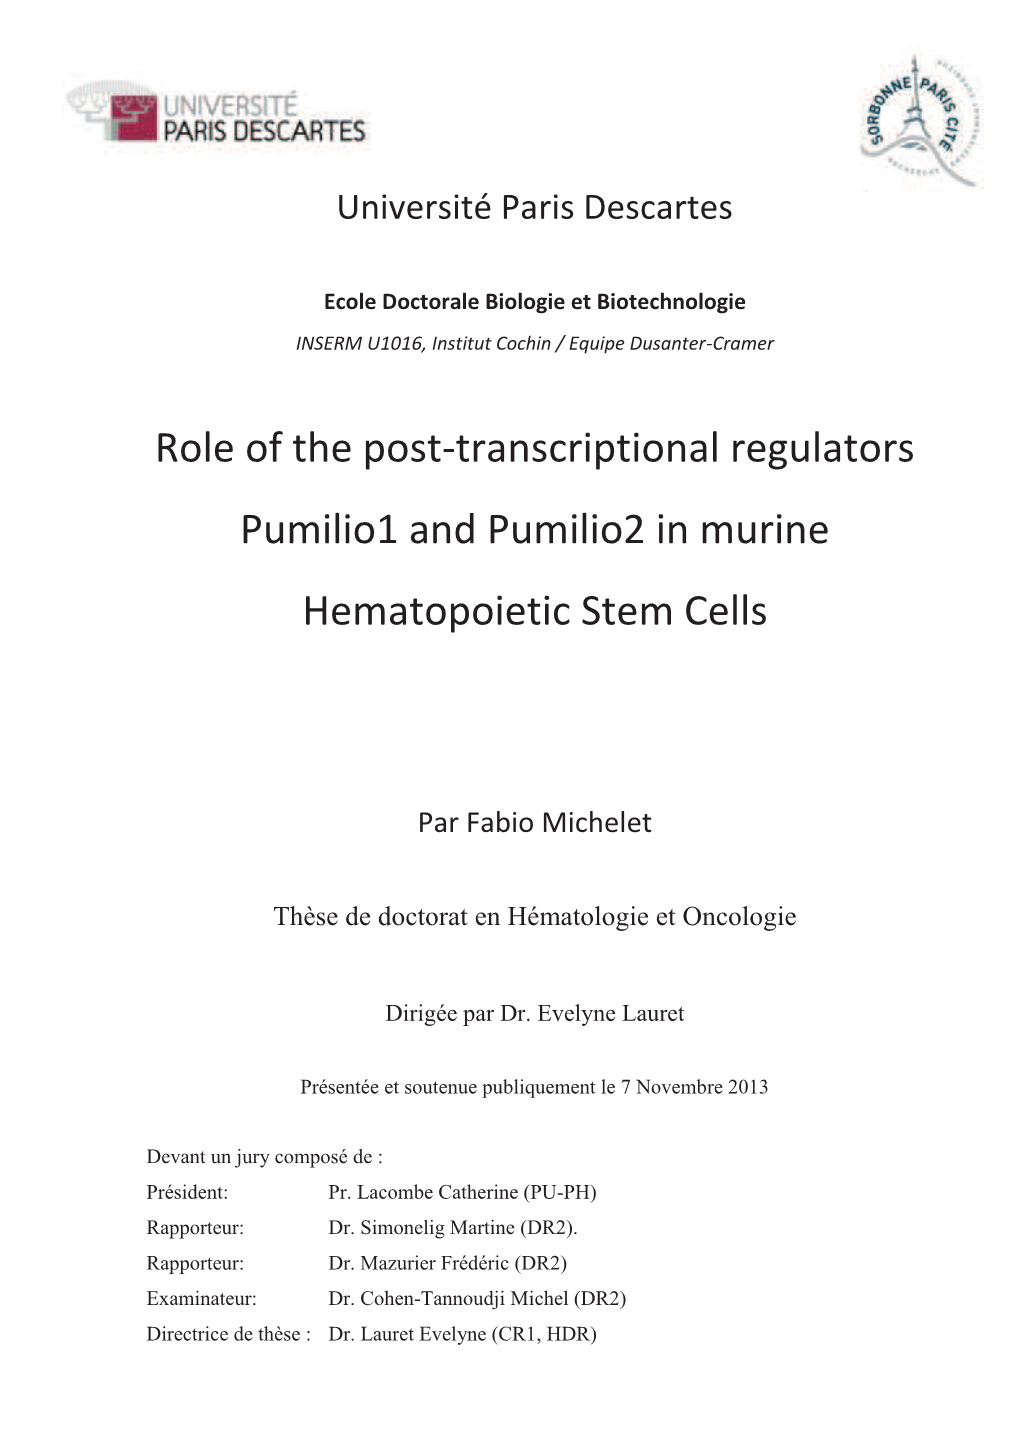 Role of the Post-Transcriptional Regulators Pumilio1 and Pumilio2 in Murine Hematopoietic Stem Cells